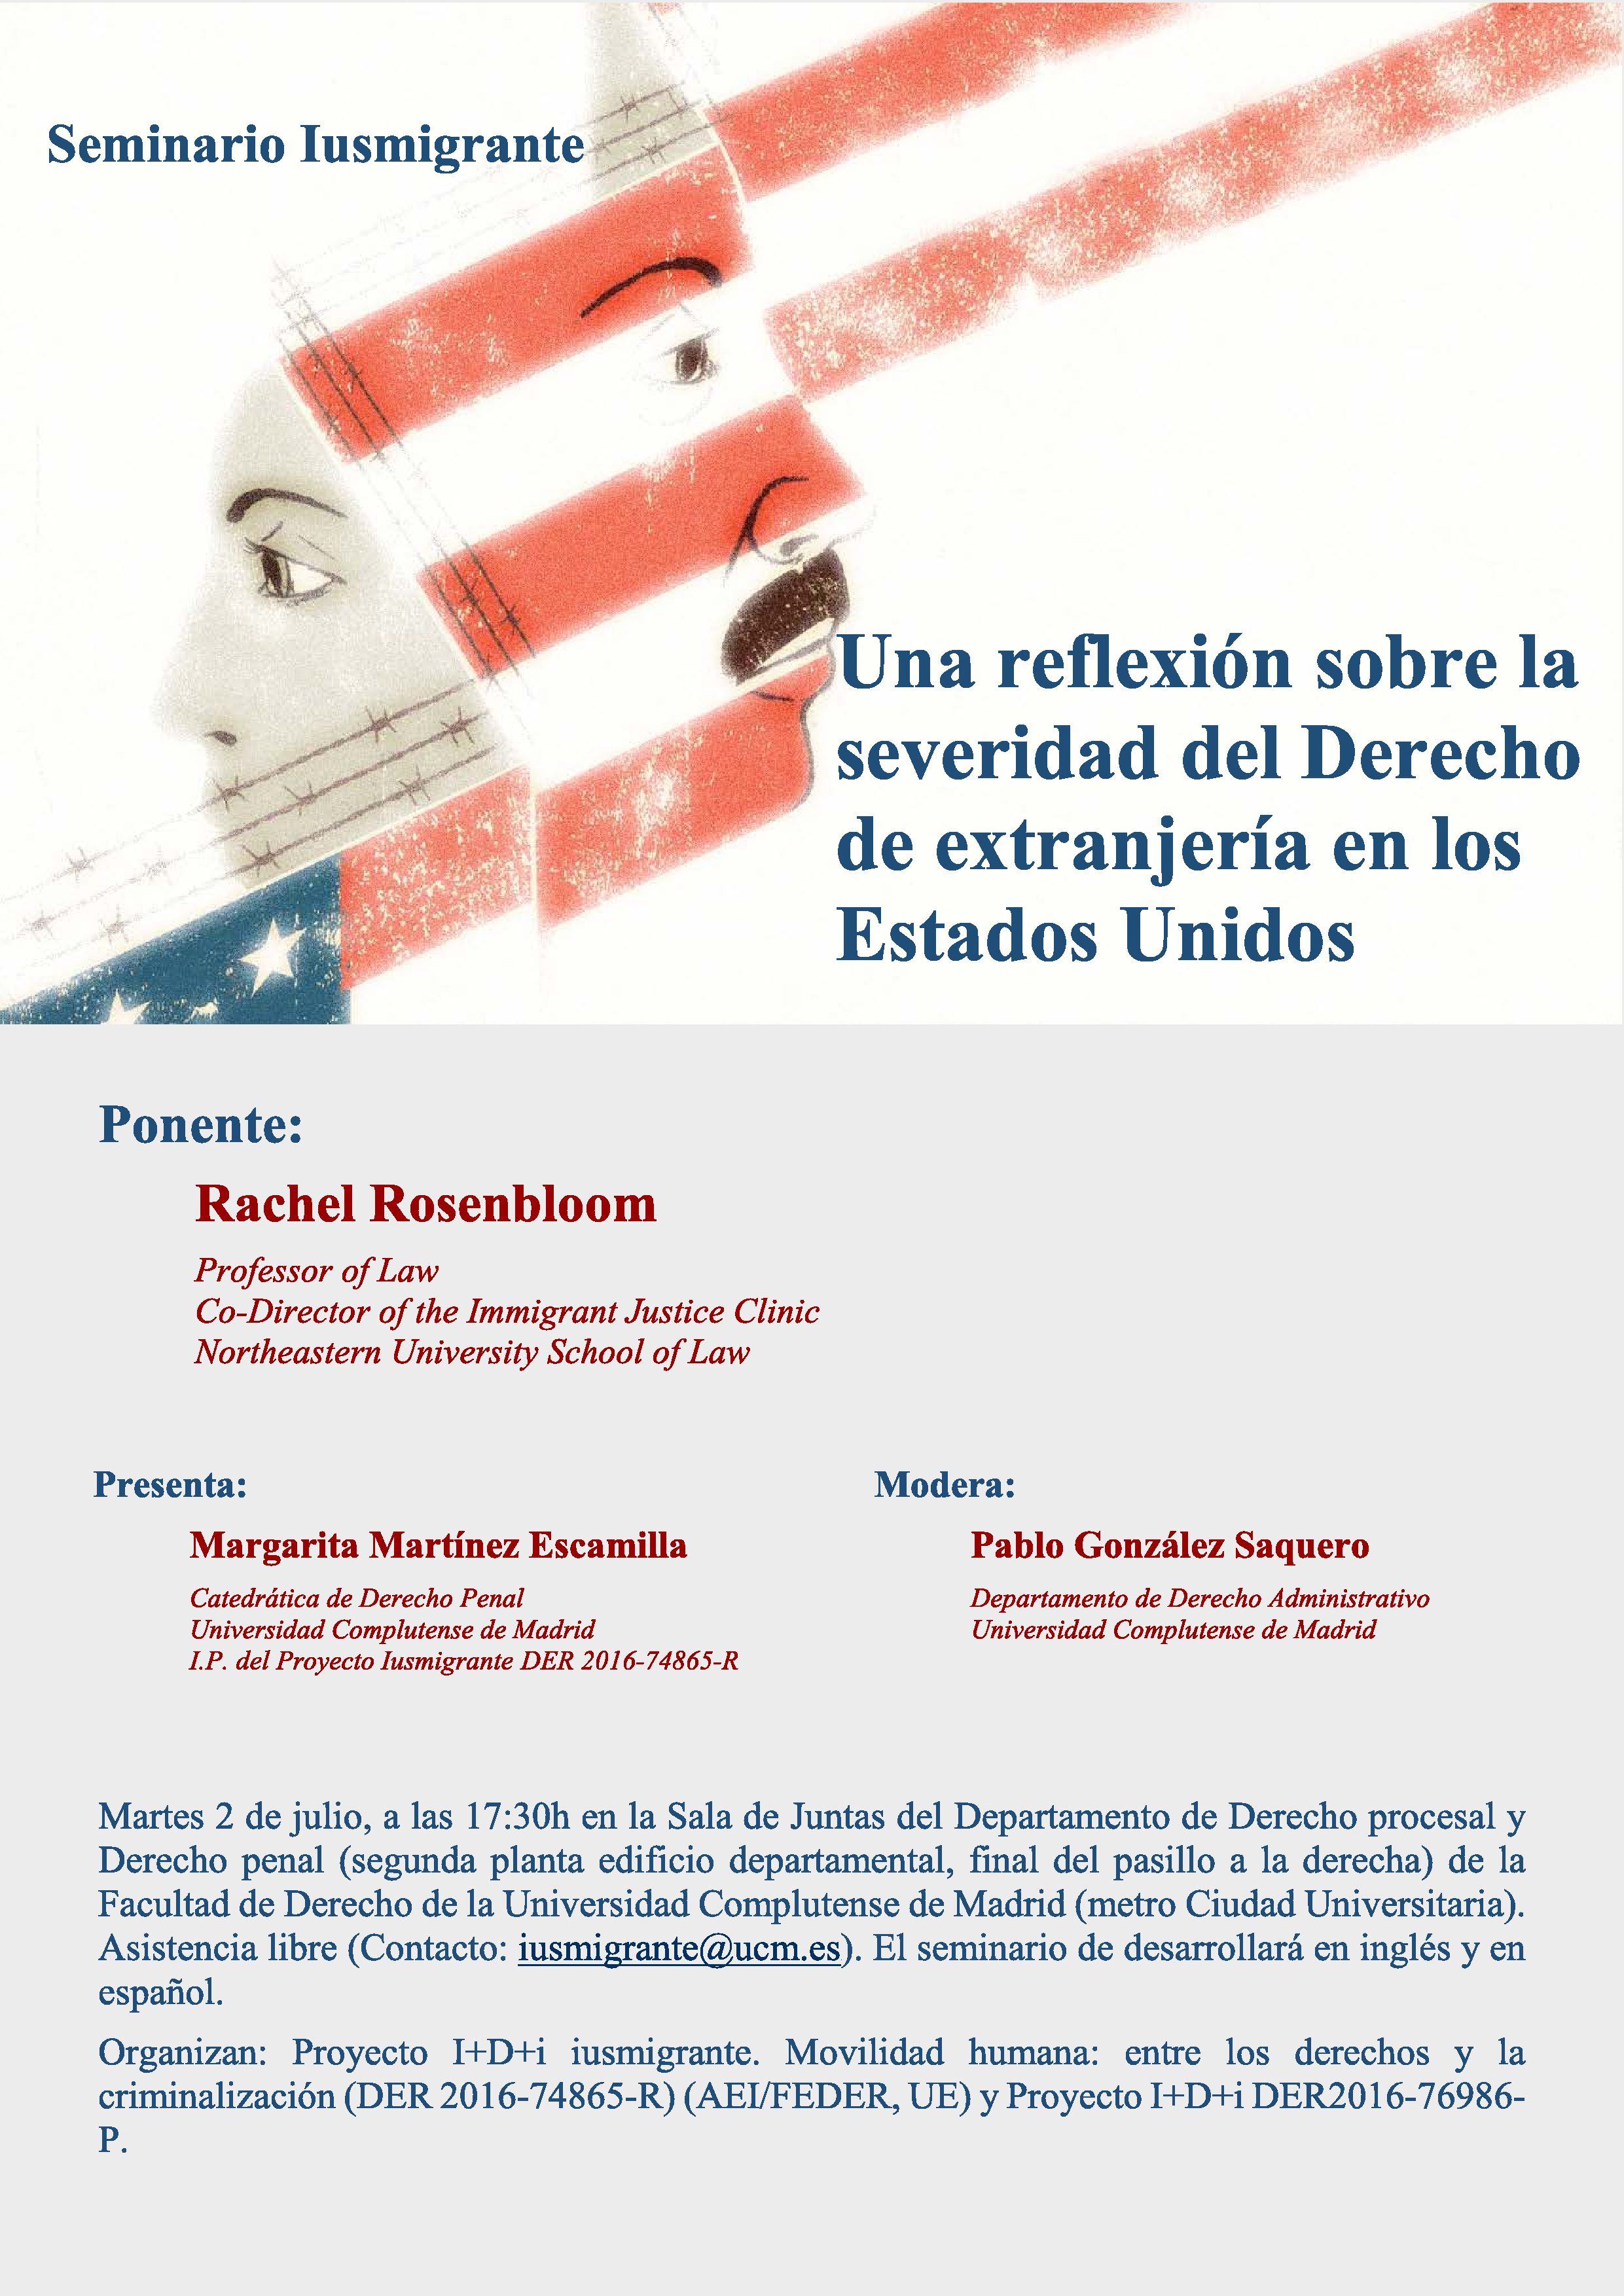 Seminario IUSMIGRANTE: "Una reflexión sobre la severidad del Derecho de extranjería en Estados Unidos"